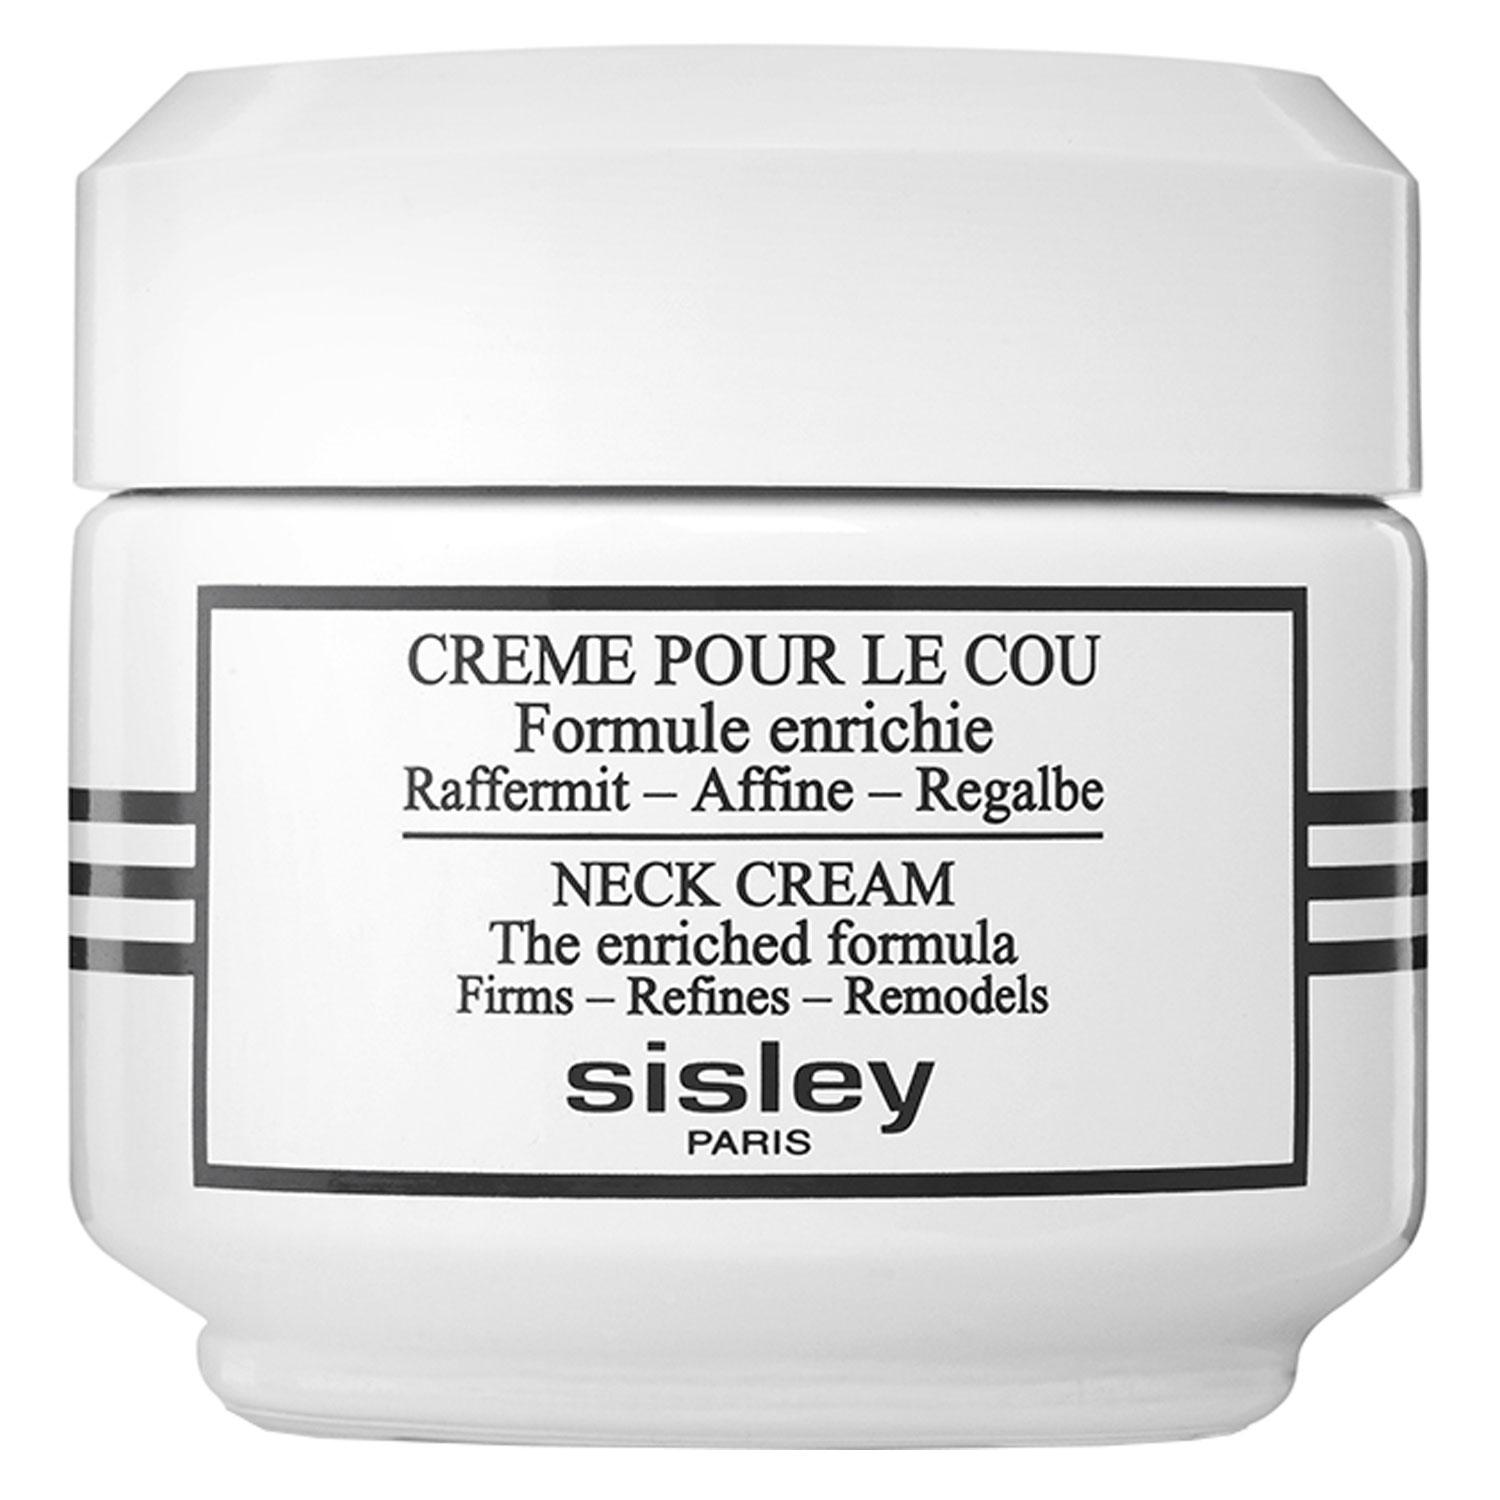 Sisley Skincare - Crème pour le Cou Formule Enrichie